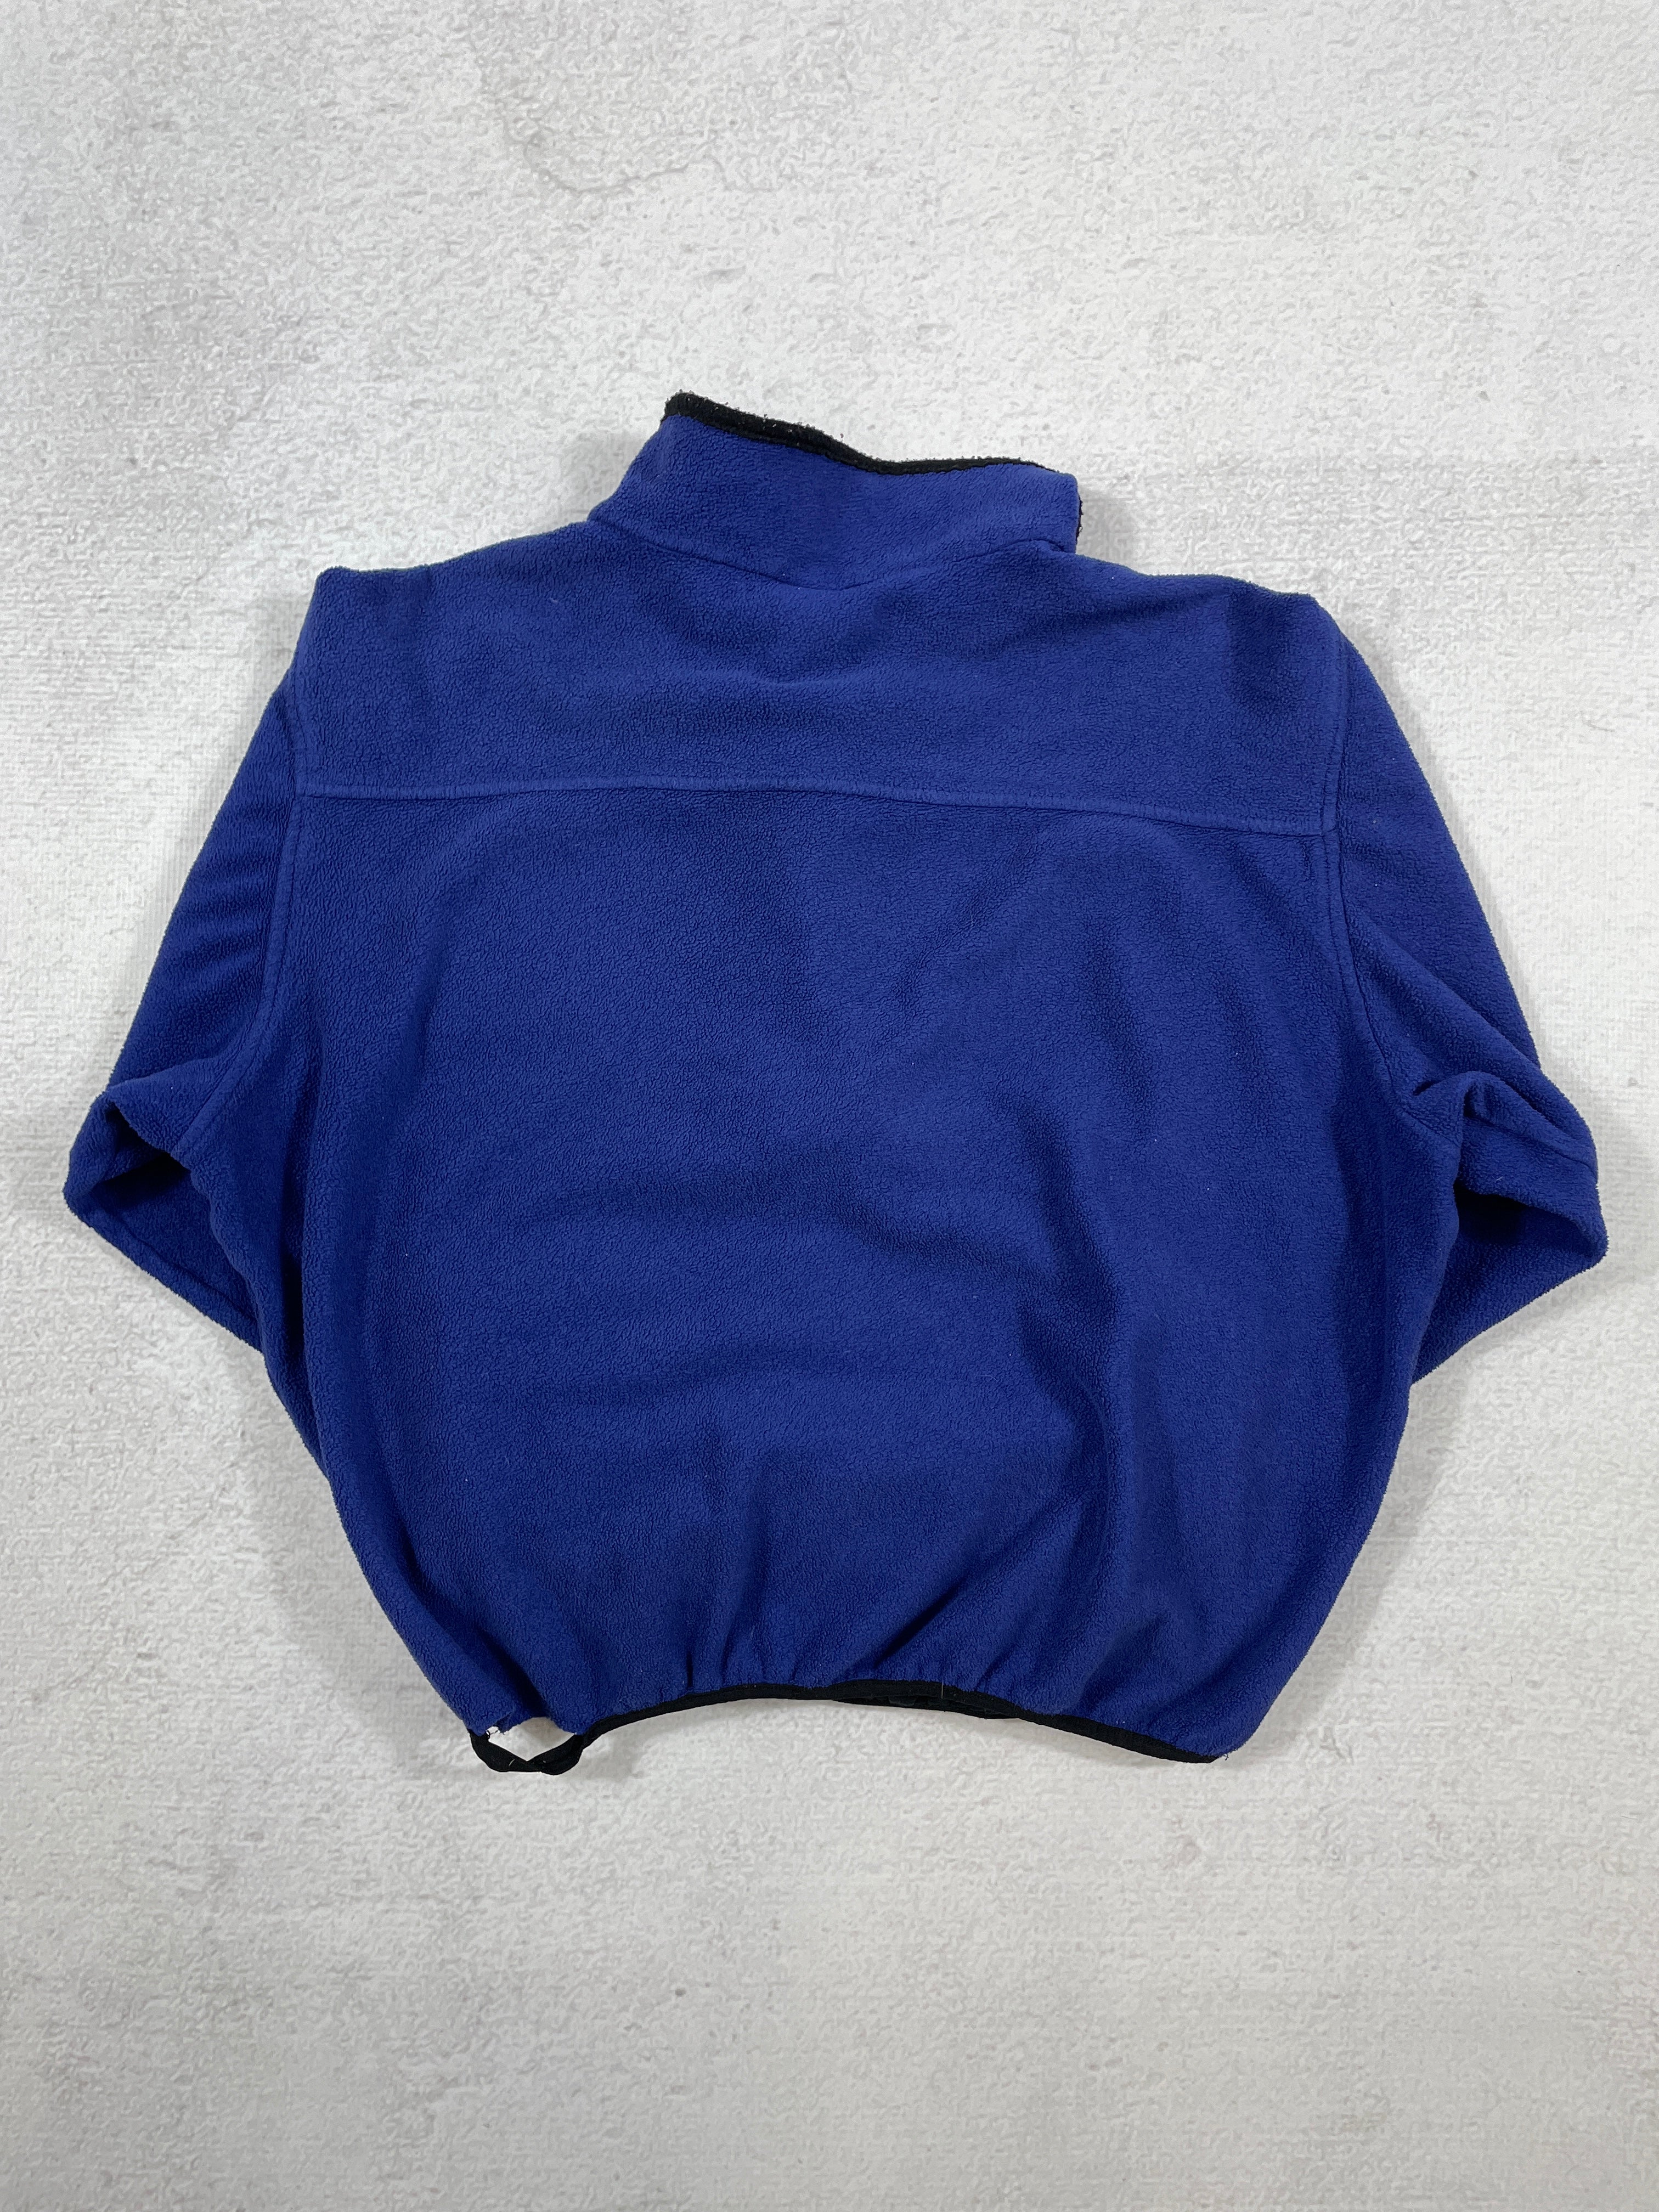 Vintage The North Face 1/2 Zip Fleece Sweatshirt - Men's Large